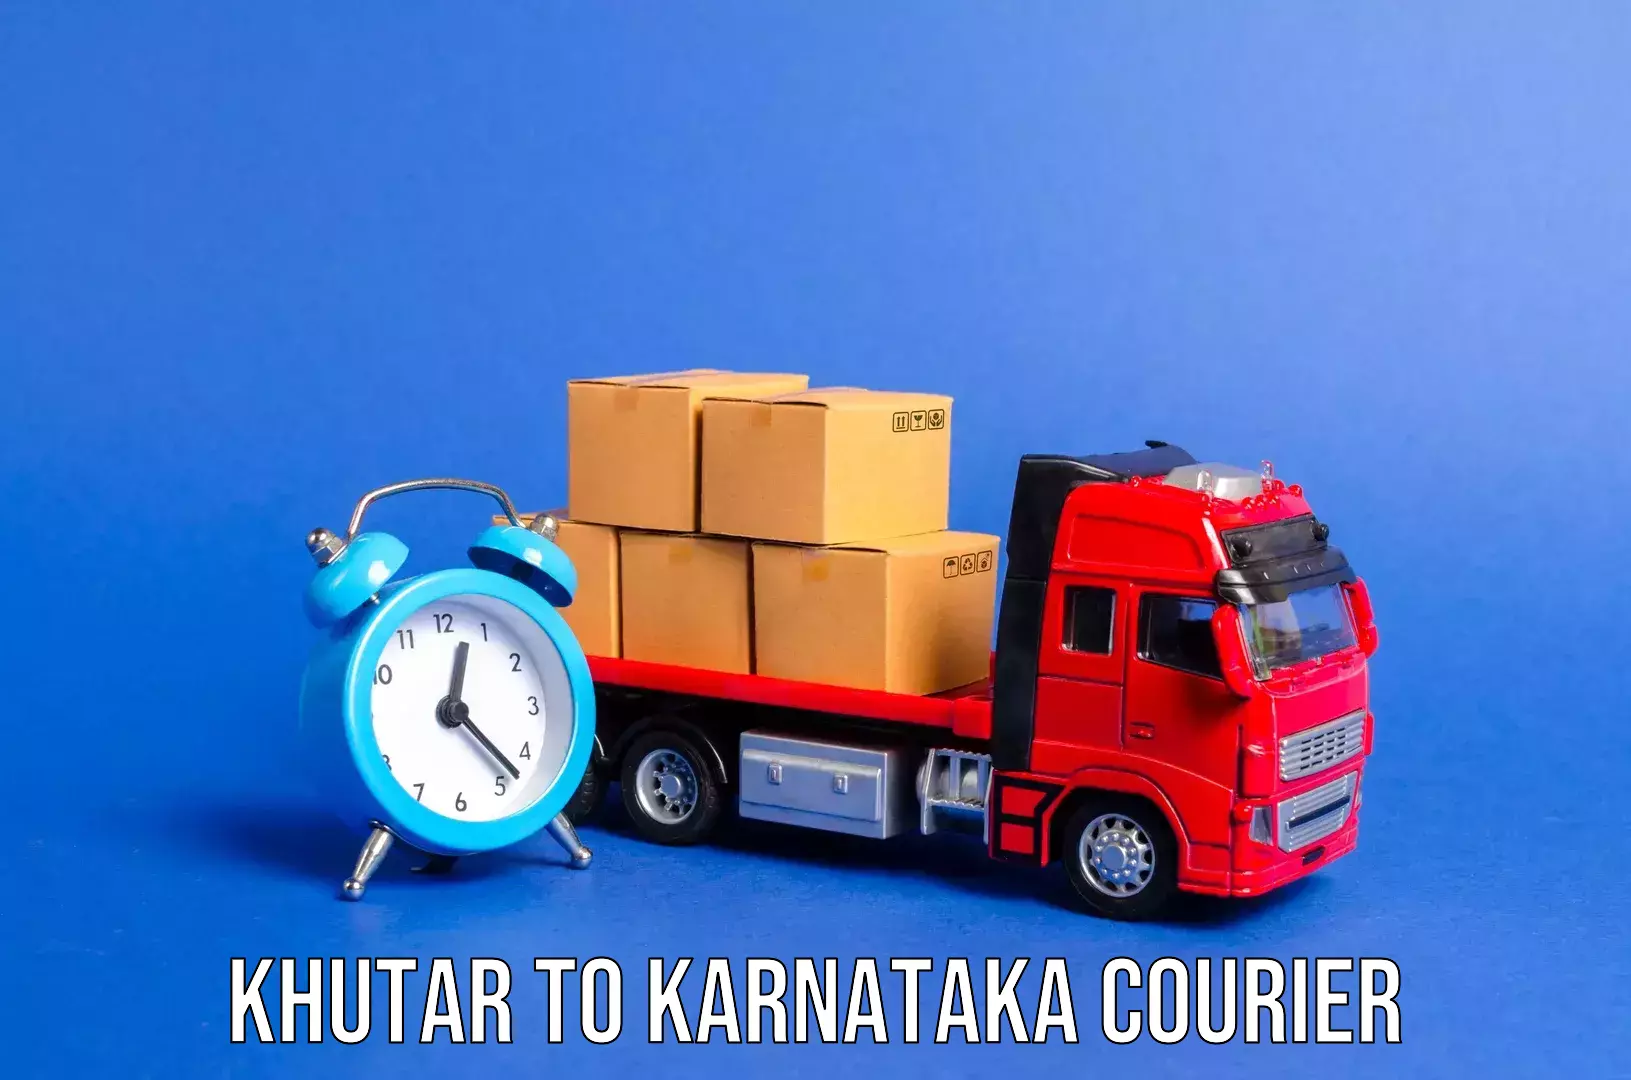 Luggage transport schedule Khutar to Karnataka